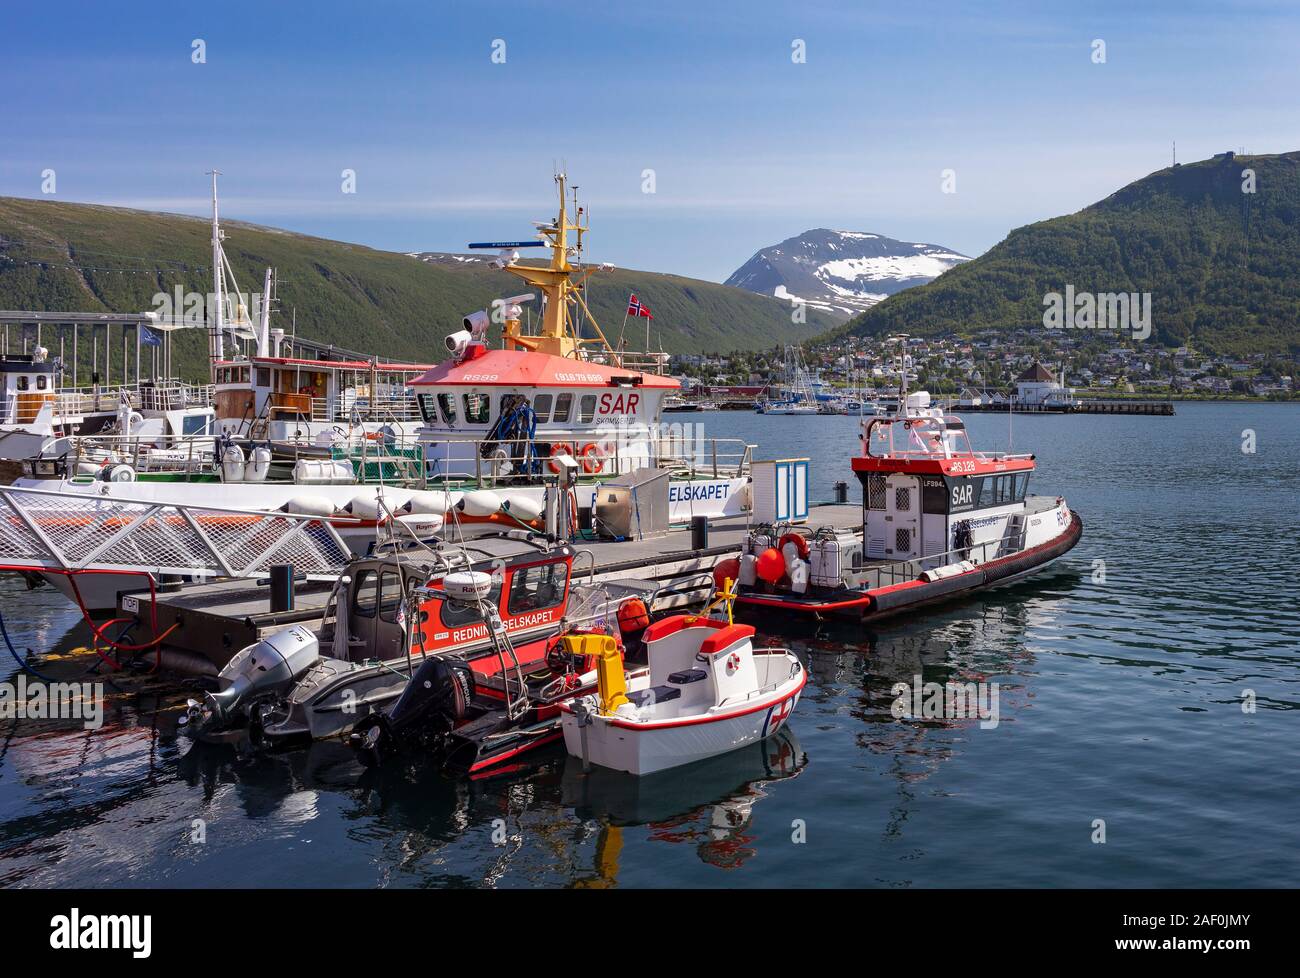 TROMSØ, NORWEGEN - Bereitschaftsboote angedockt im Hafen, durch Redningsselskapet, Norwegische Gesellschaft für Sea Rescue betrieben. Stockfoto